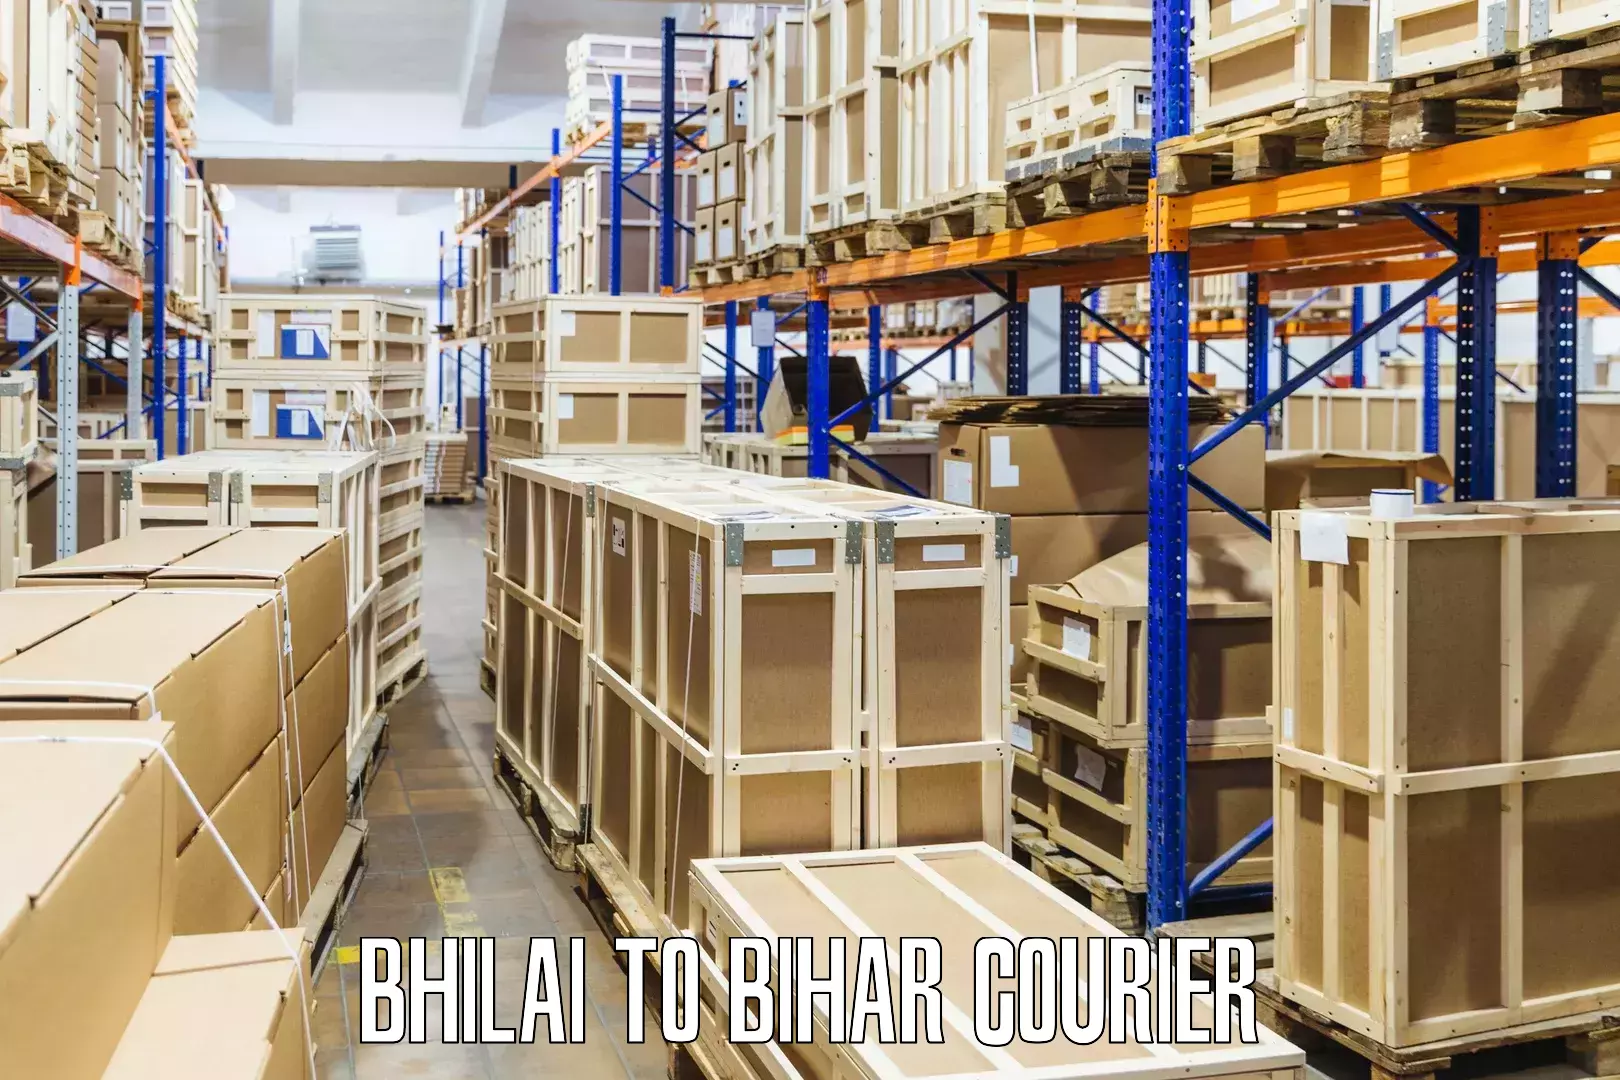 Customizable shipping options Bhilai to Imamganj